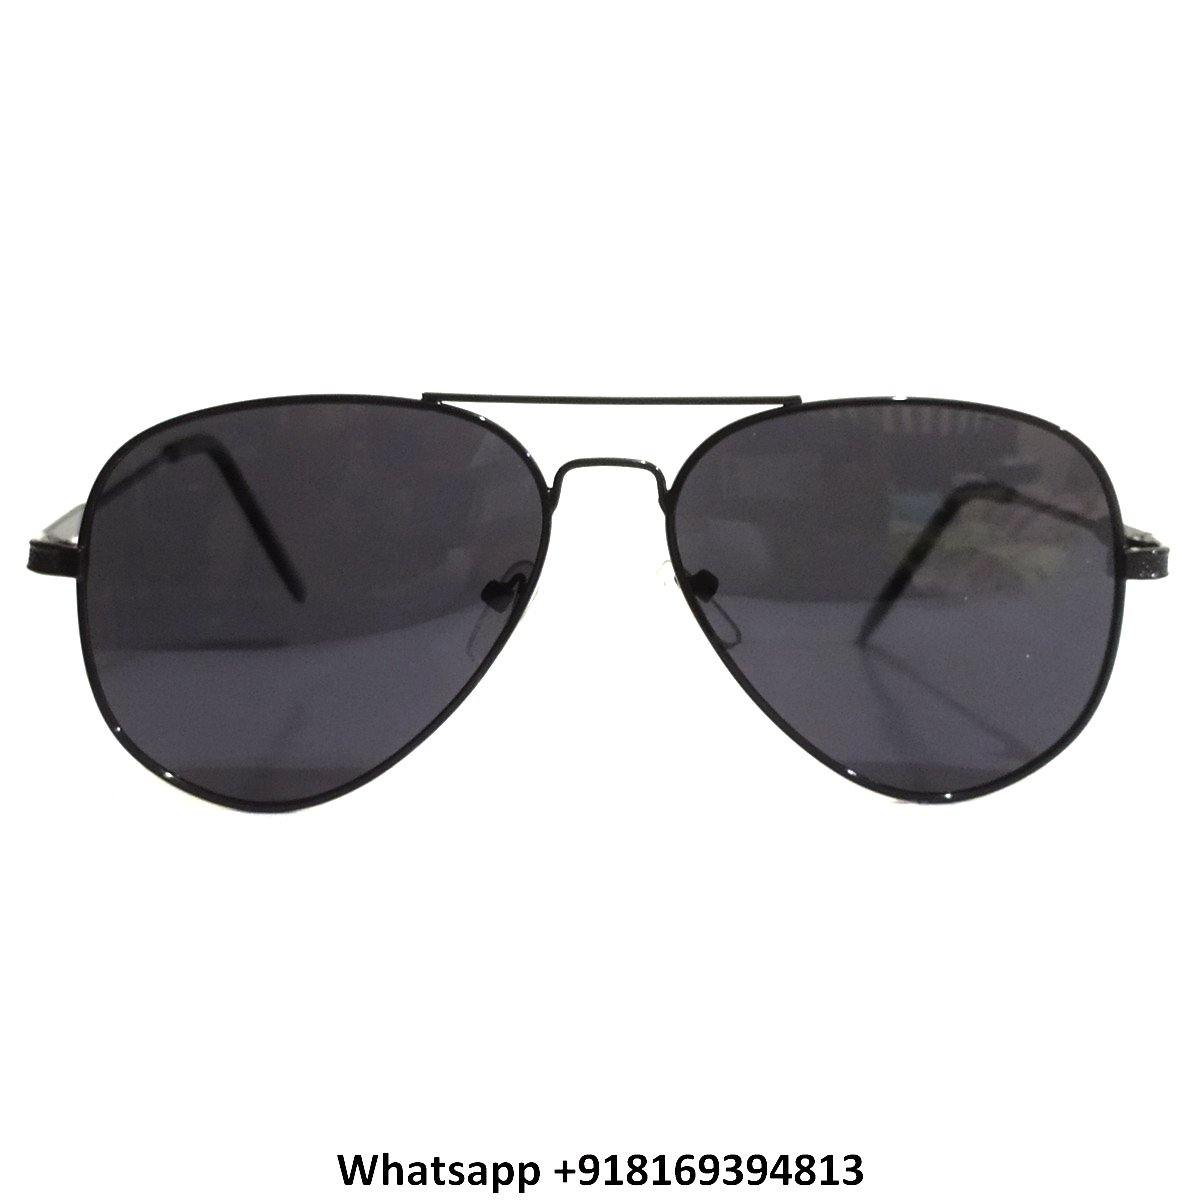 Pilot Polarized Sunglasses for Men and Women 79293BK - Glasses India Online